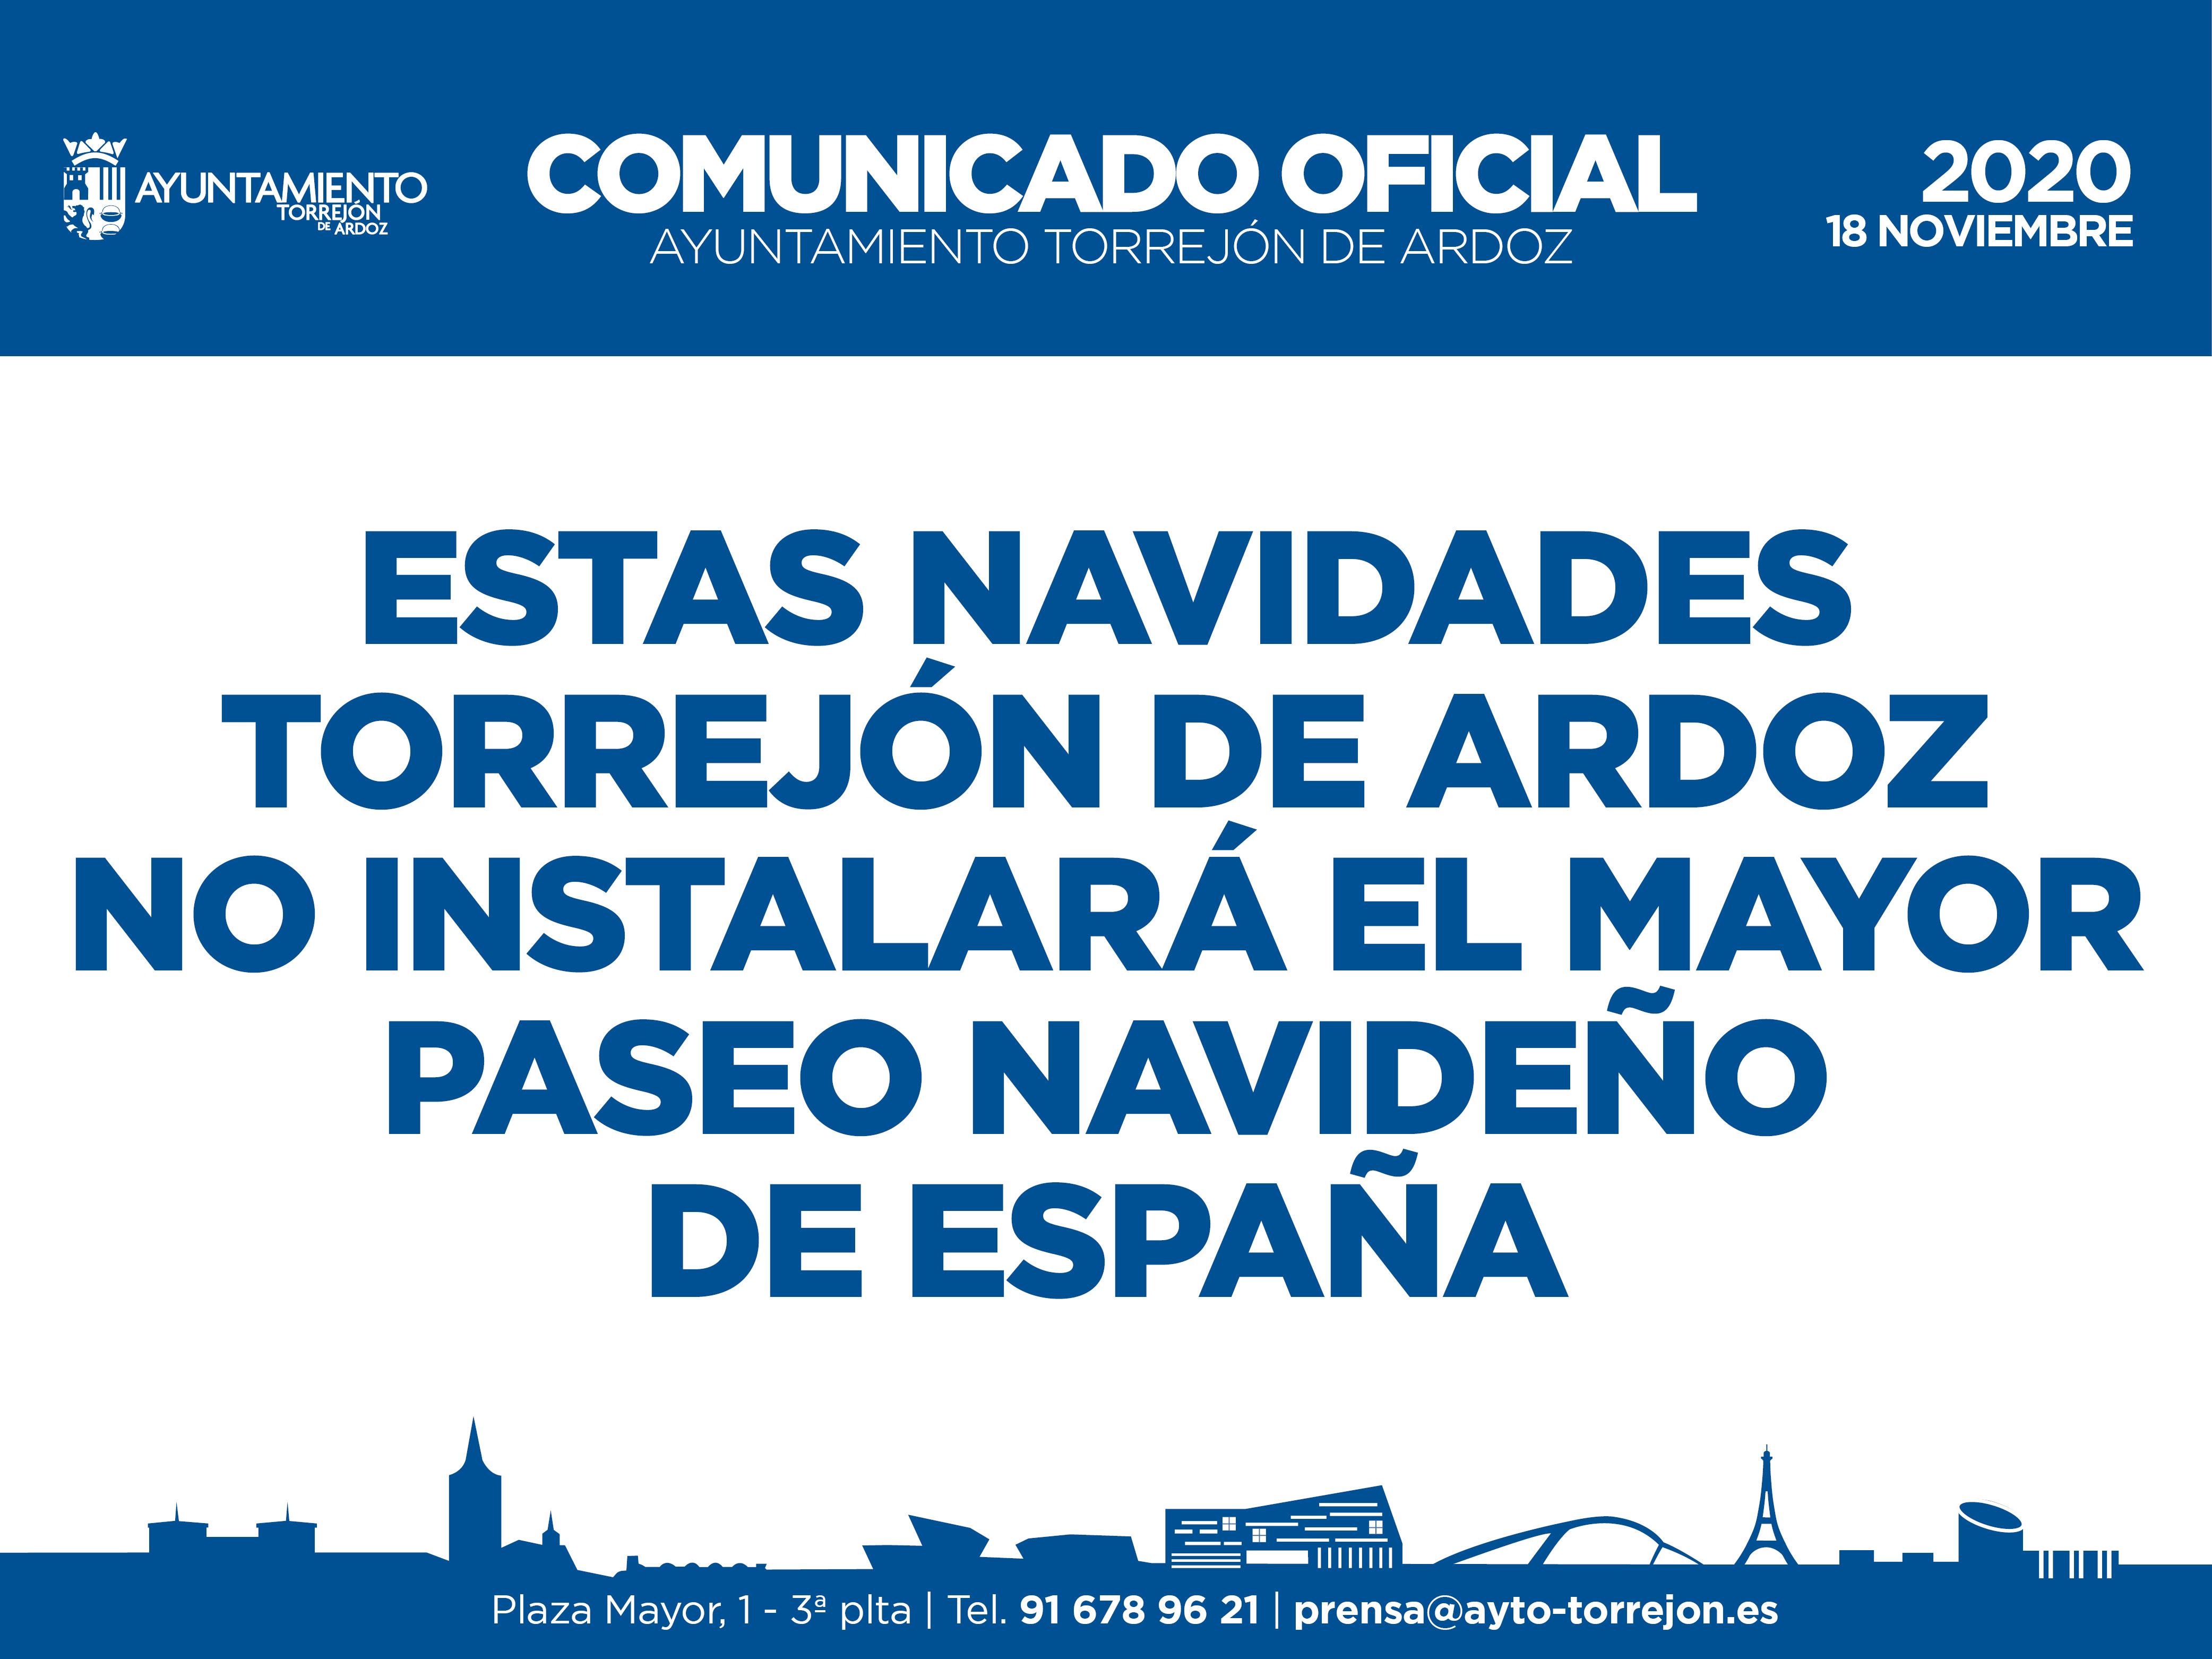 Torrejón de Ardoz suspende el Paseo Navideño y Cabalgata - Mágicas Navidades Torrejón de Ardoz -parque temático, Madrid - Foro Madrid